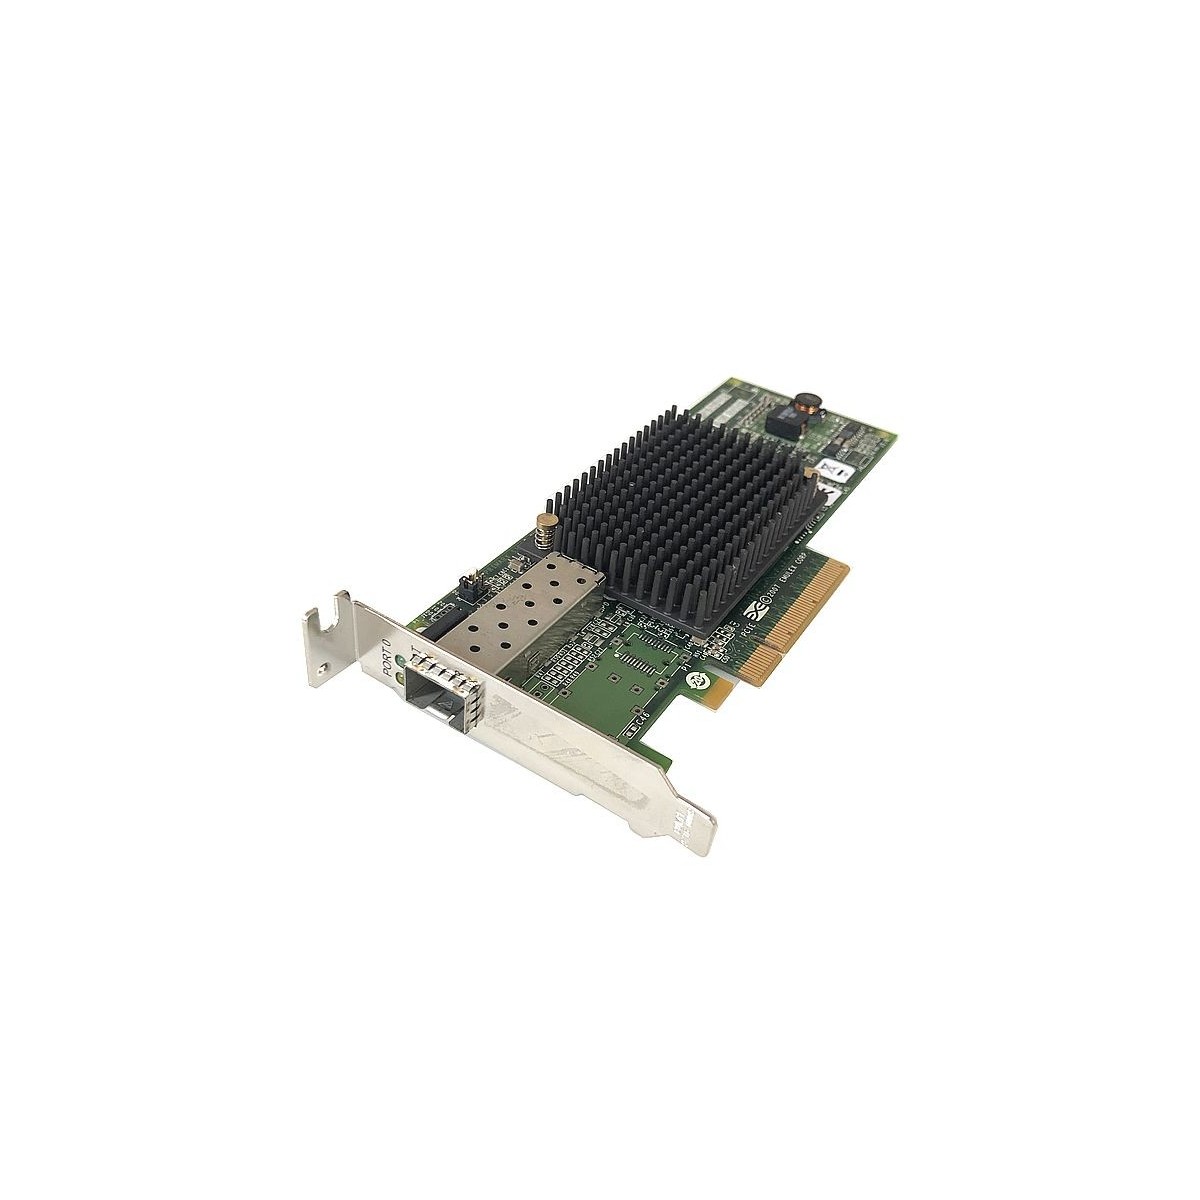 EMULEX LPE12000 PCIE +GBIC 8G FC HBA LOW AJ762-63001